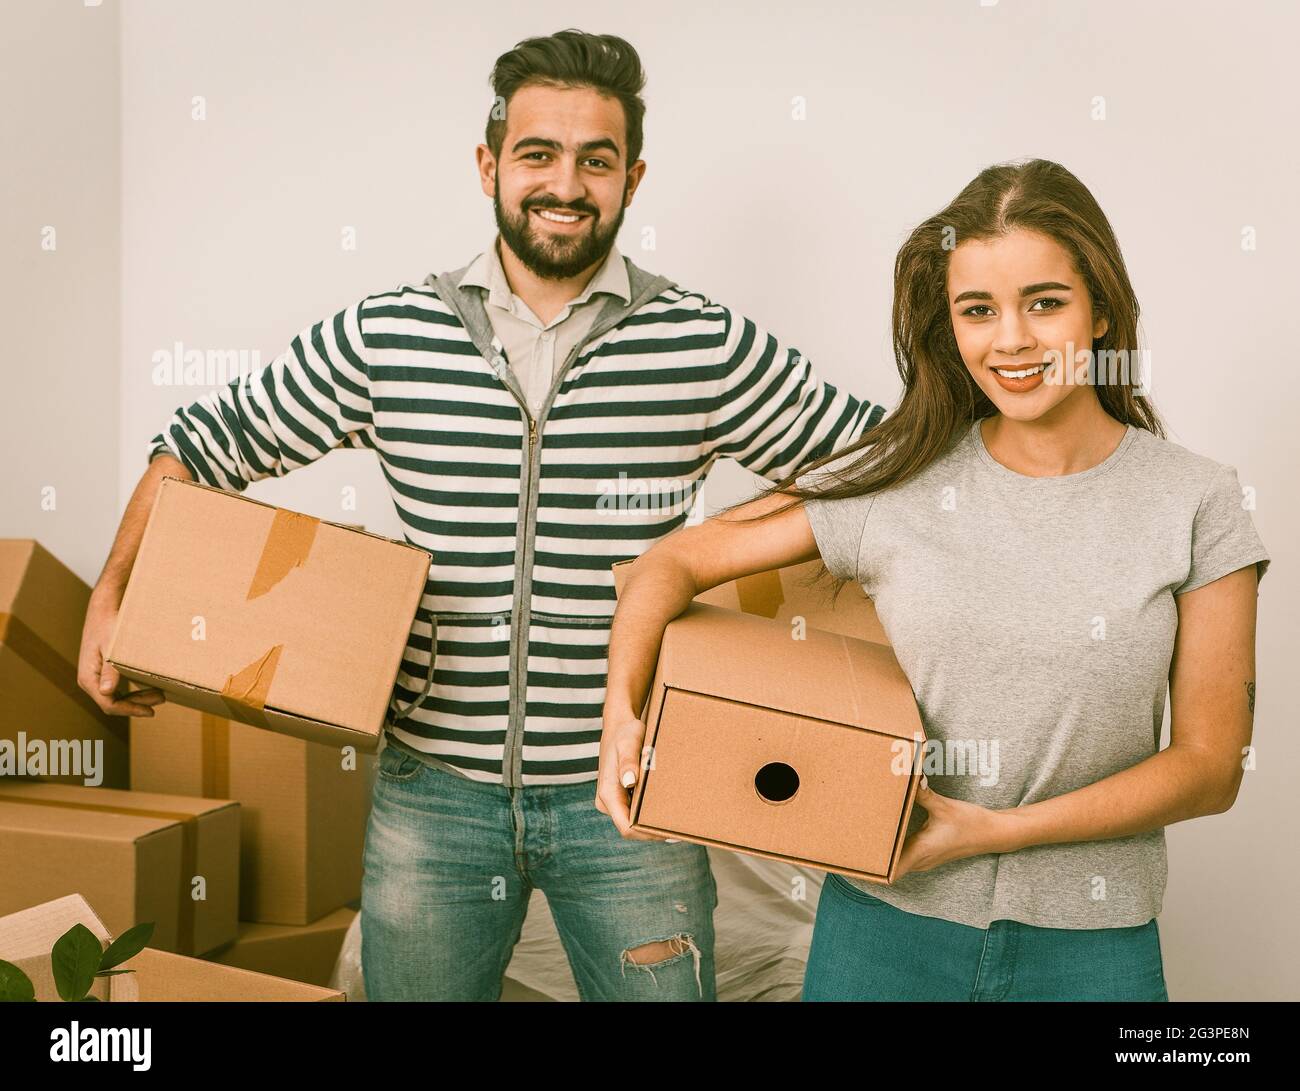 Jeune couple souriant et tenant des boîtes tout en se tenant dans des boîtes non emballées Banque D'Images